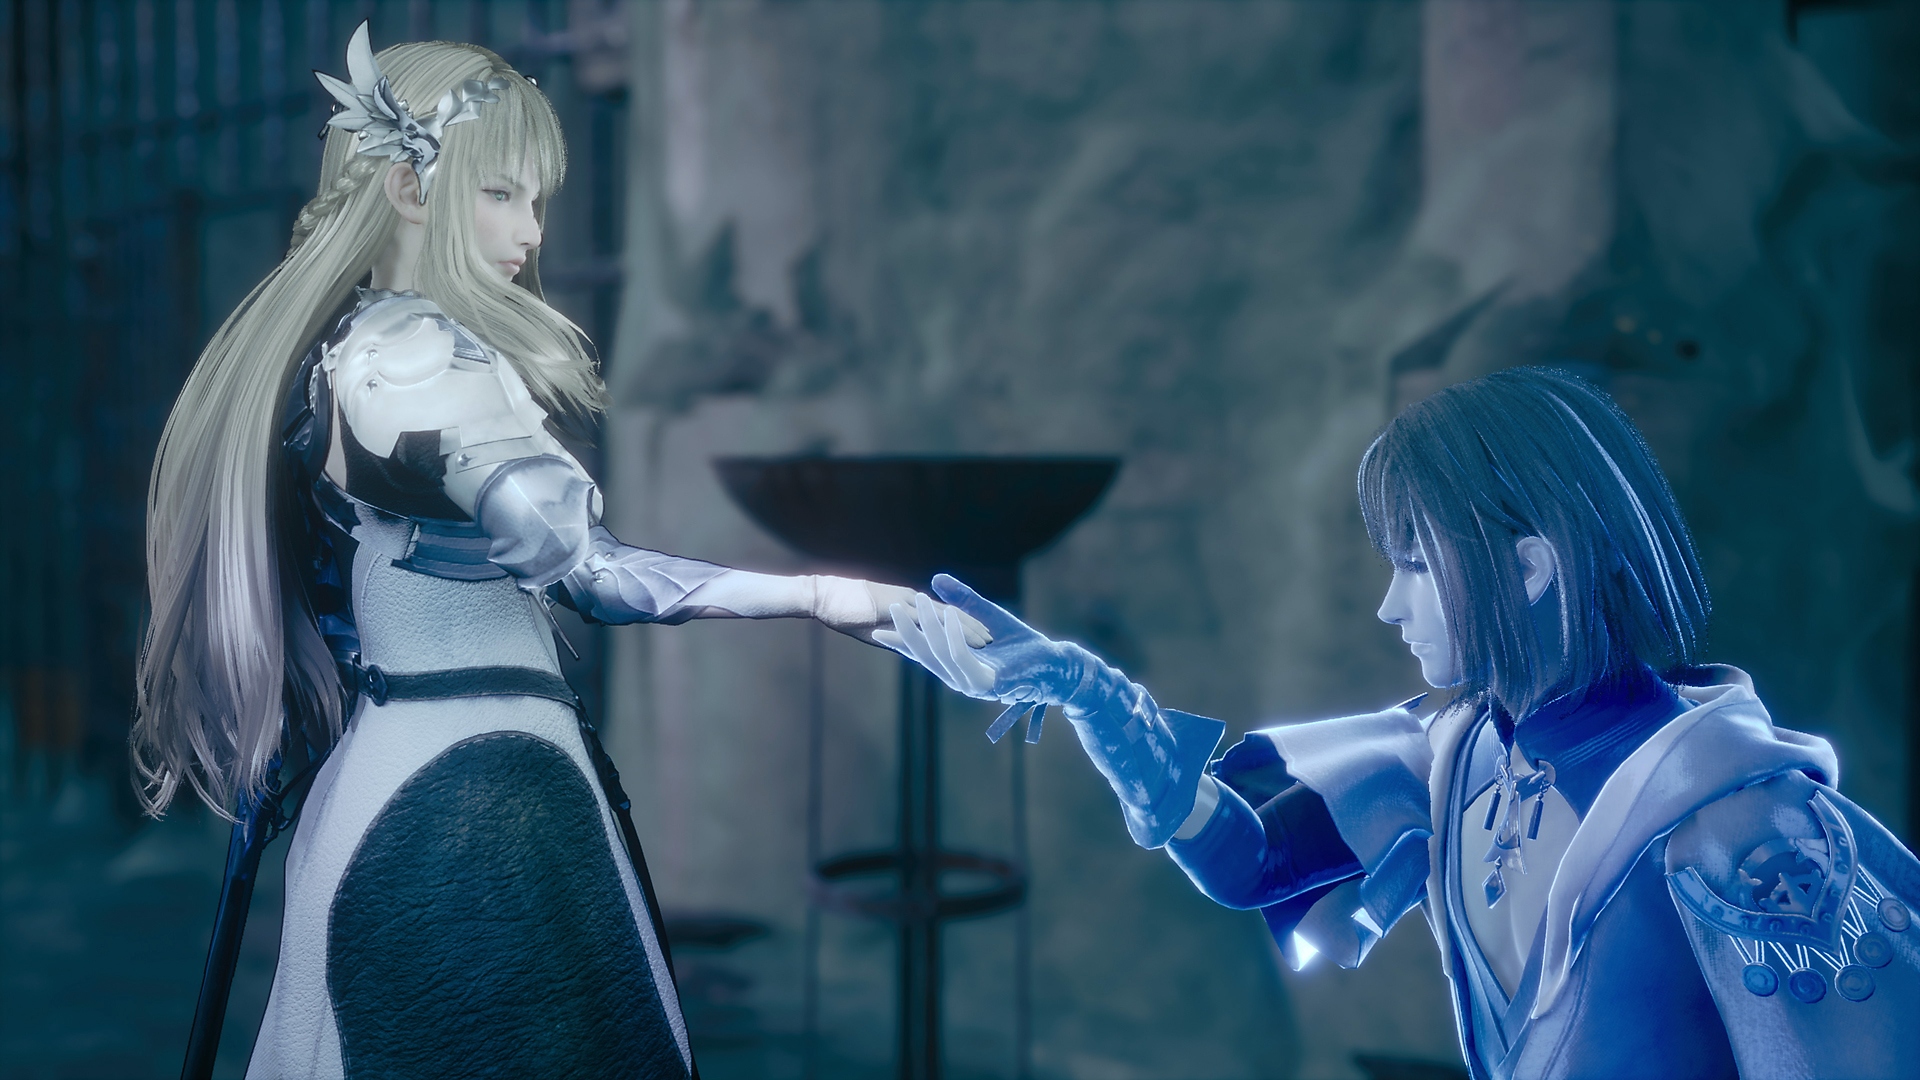 Valkyrie Elysium-screenshot van een blauwgloeiende ridder die knielt voor een prinses